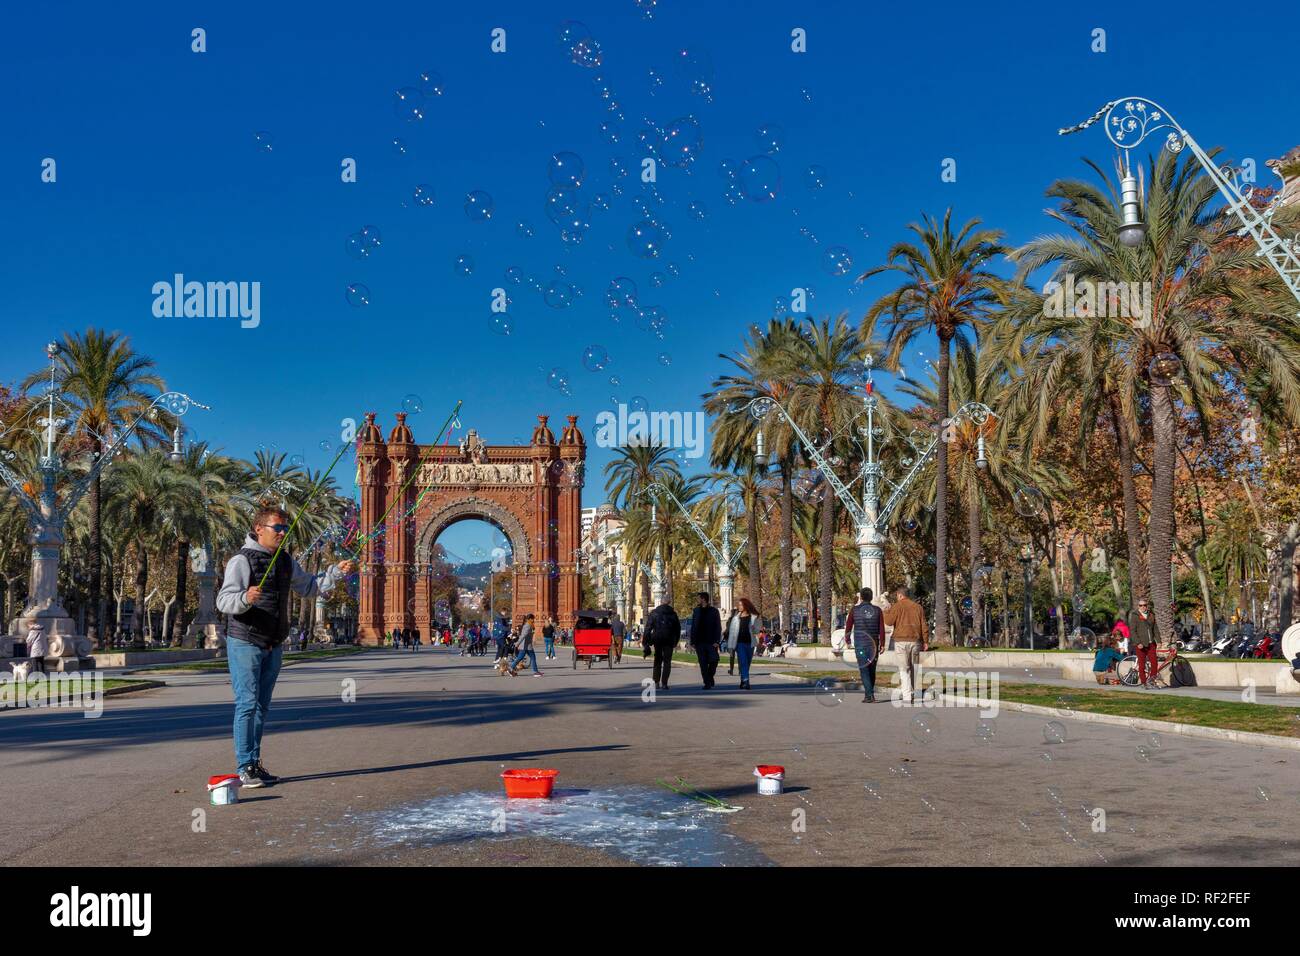 Artiste de rue, fait des bulles de savon, de l'Arc de Triomf, Passeig de Lluis Companys, Barcelone, Catalogne, Espagne Banque D'Images